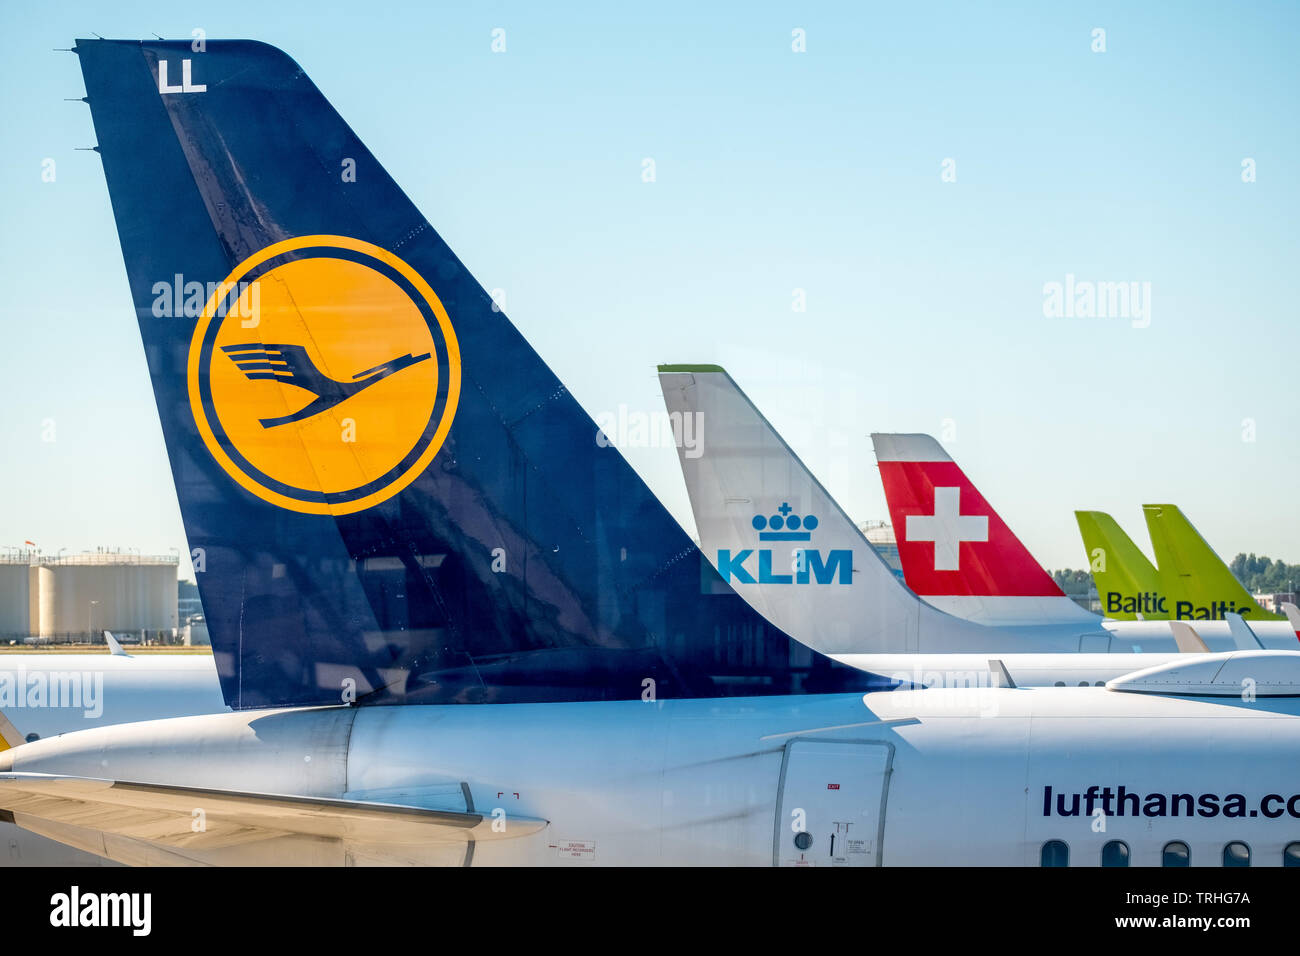 Profili di Lufthansa, KLM, Swiss Air e aria del Baltico all'Aeroporto di Amsterdam Schiphol, Noord-Holland, Paesi Bassi, Europa, Schiphol, NLD, viaggi, turismo Foto Stock